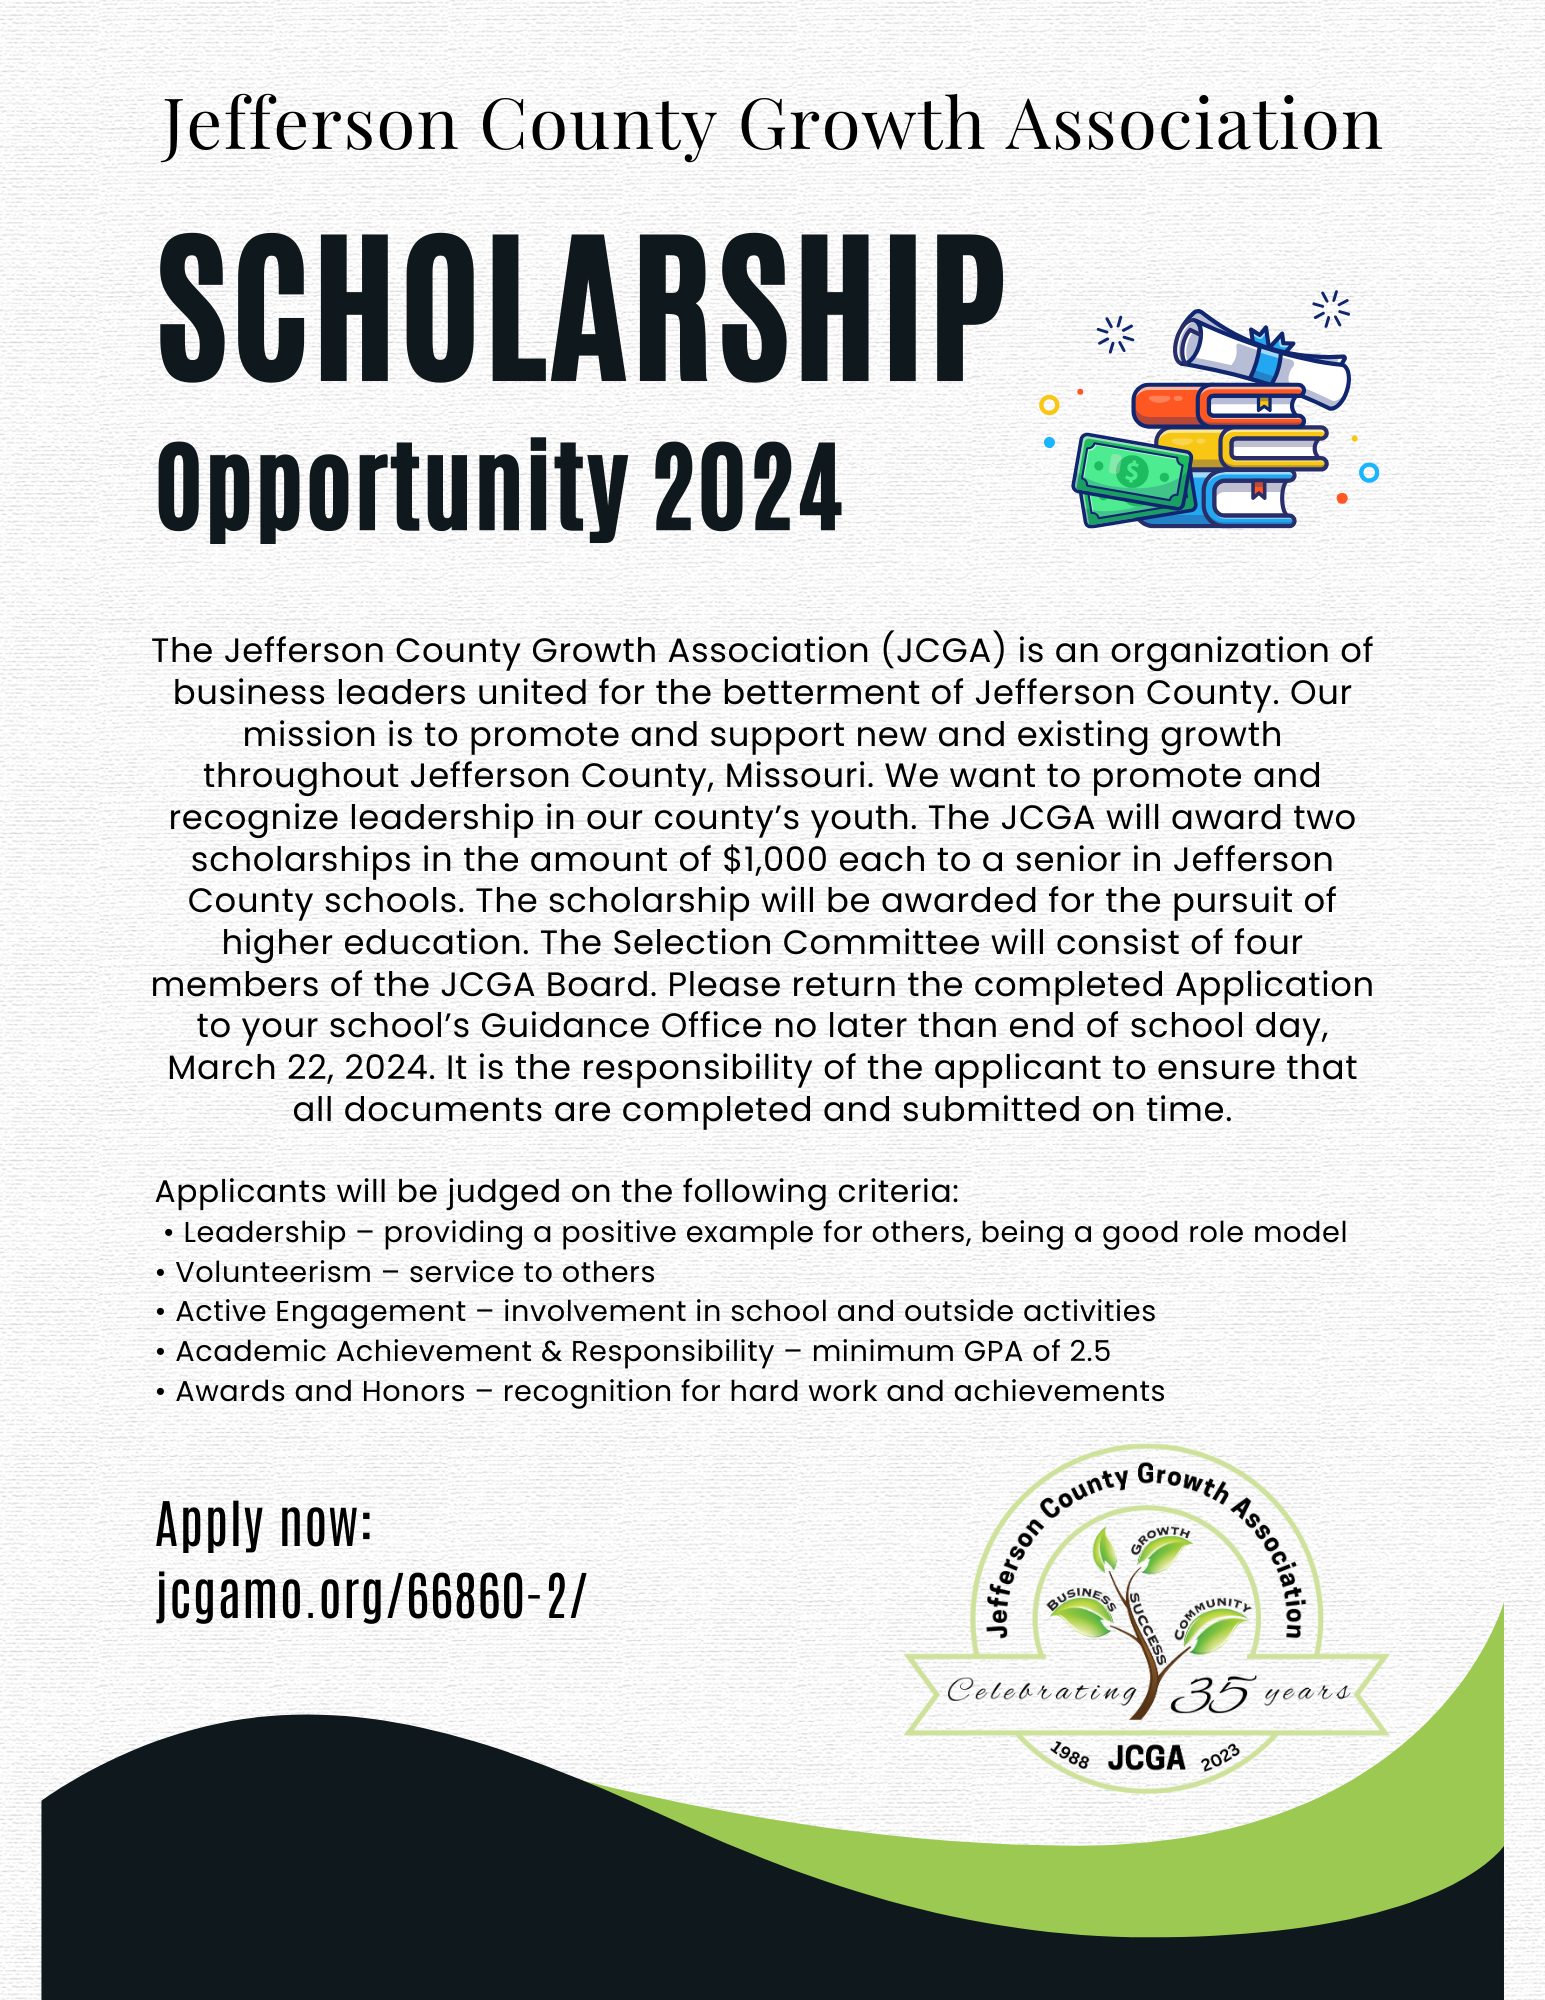 JCGA 2024 Scholarship Opportunity